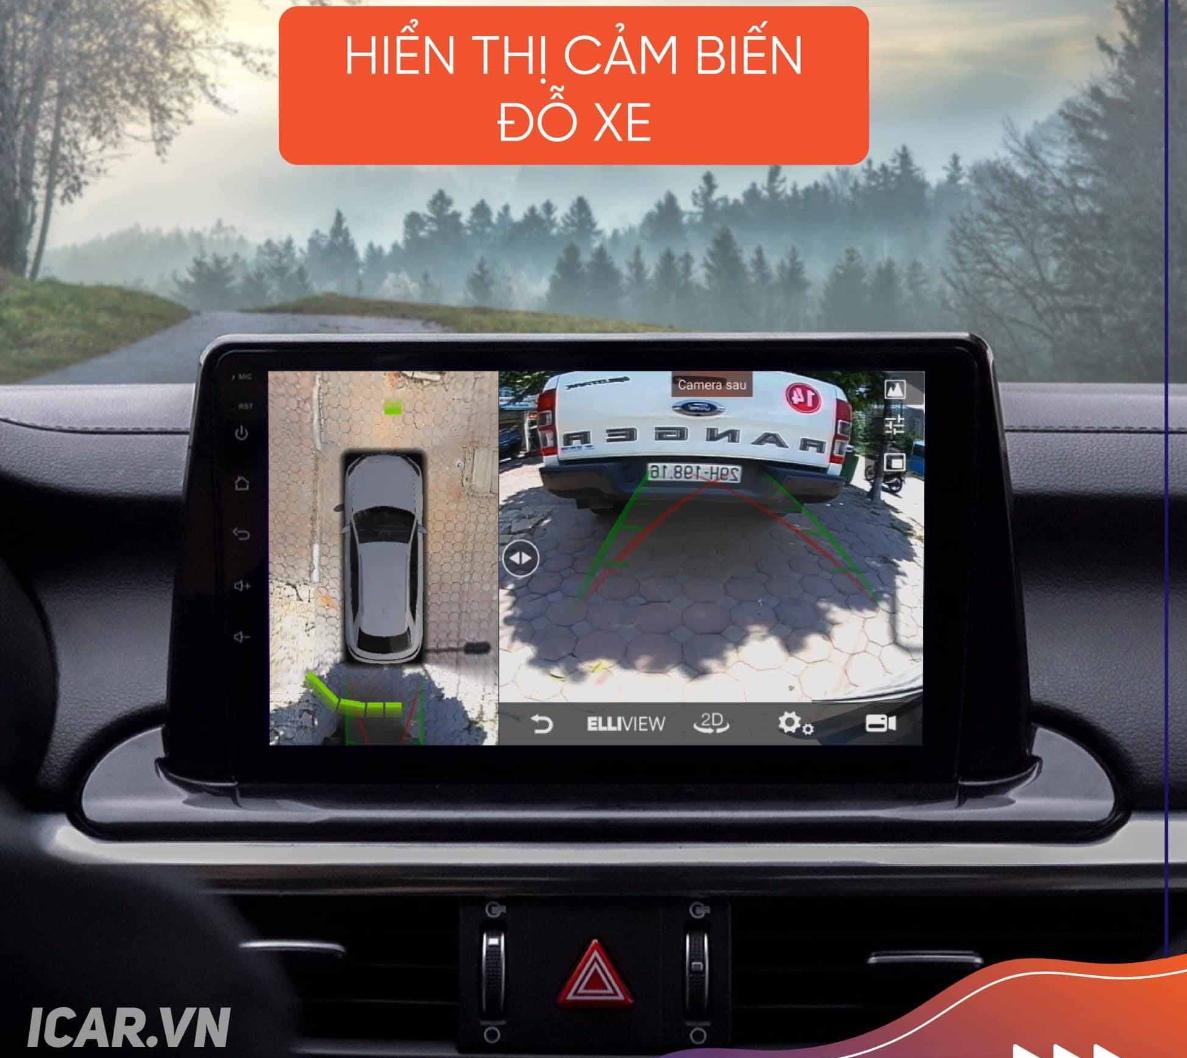 Màn hình Elliview S4 tích hợp hiển thị cảm biến đỗ xe zin